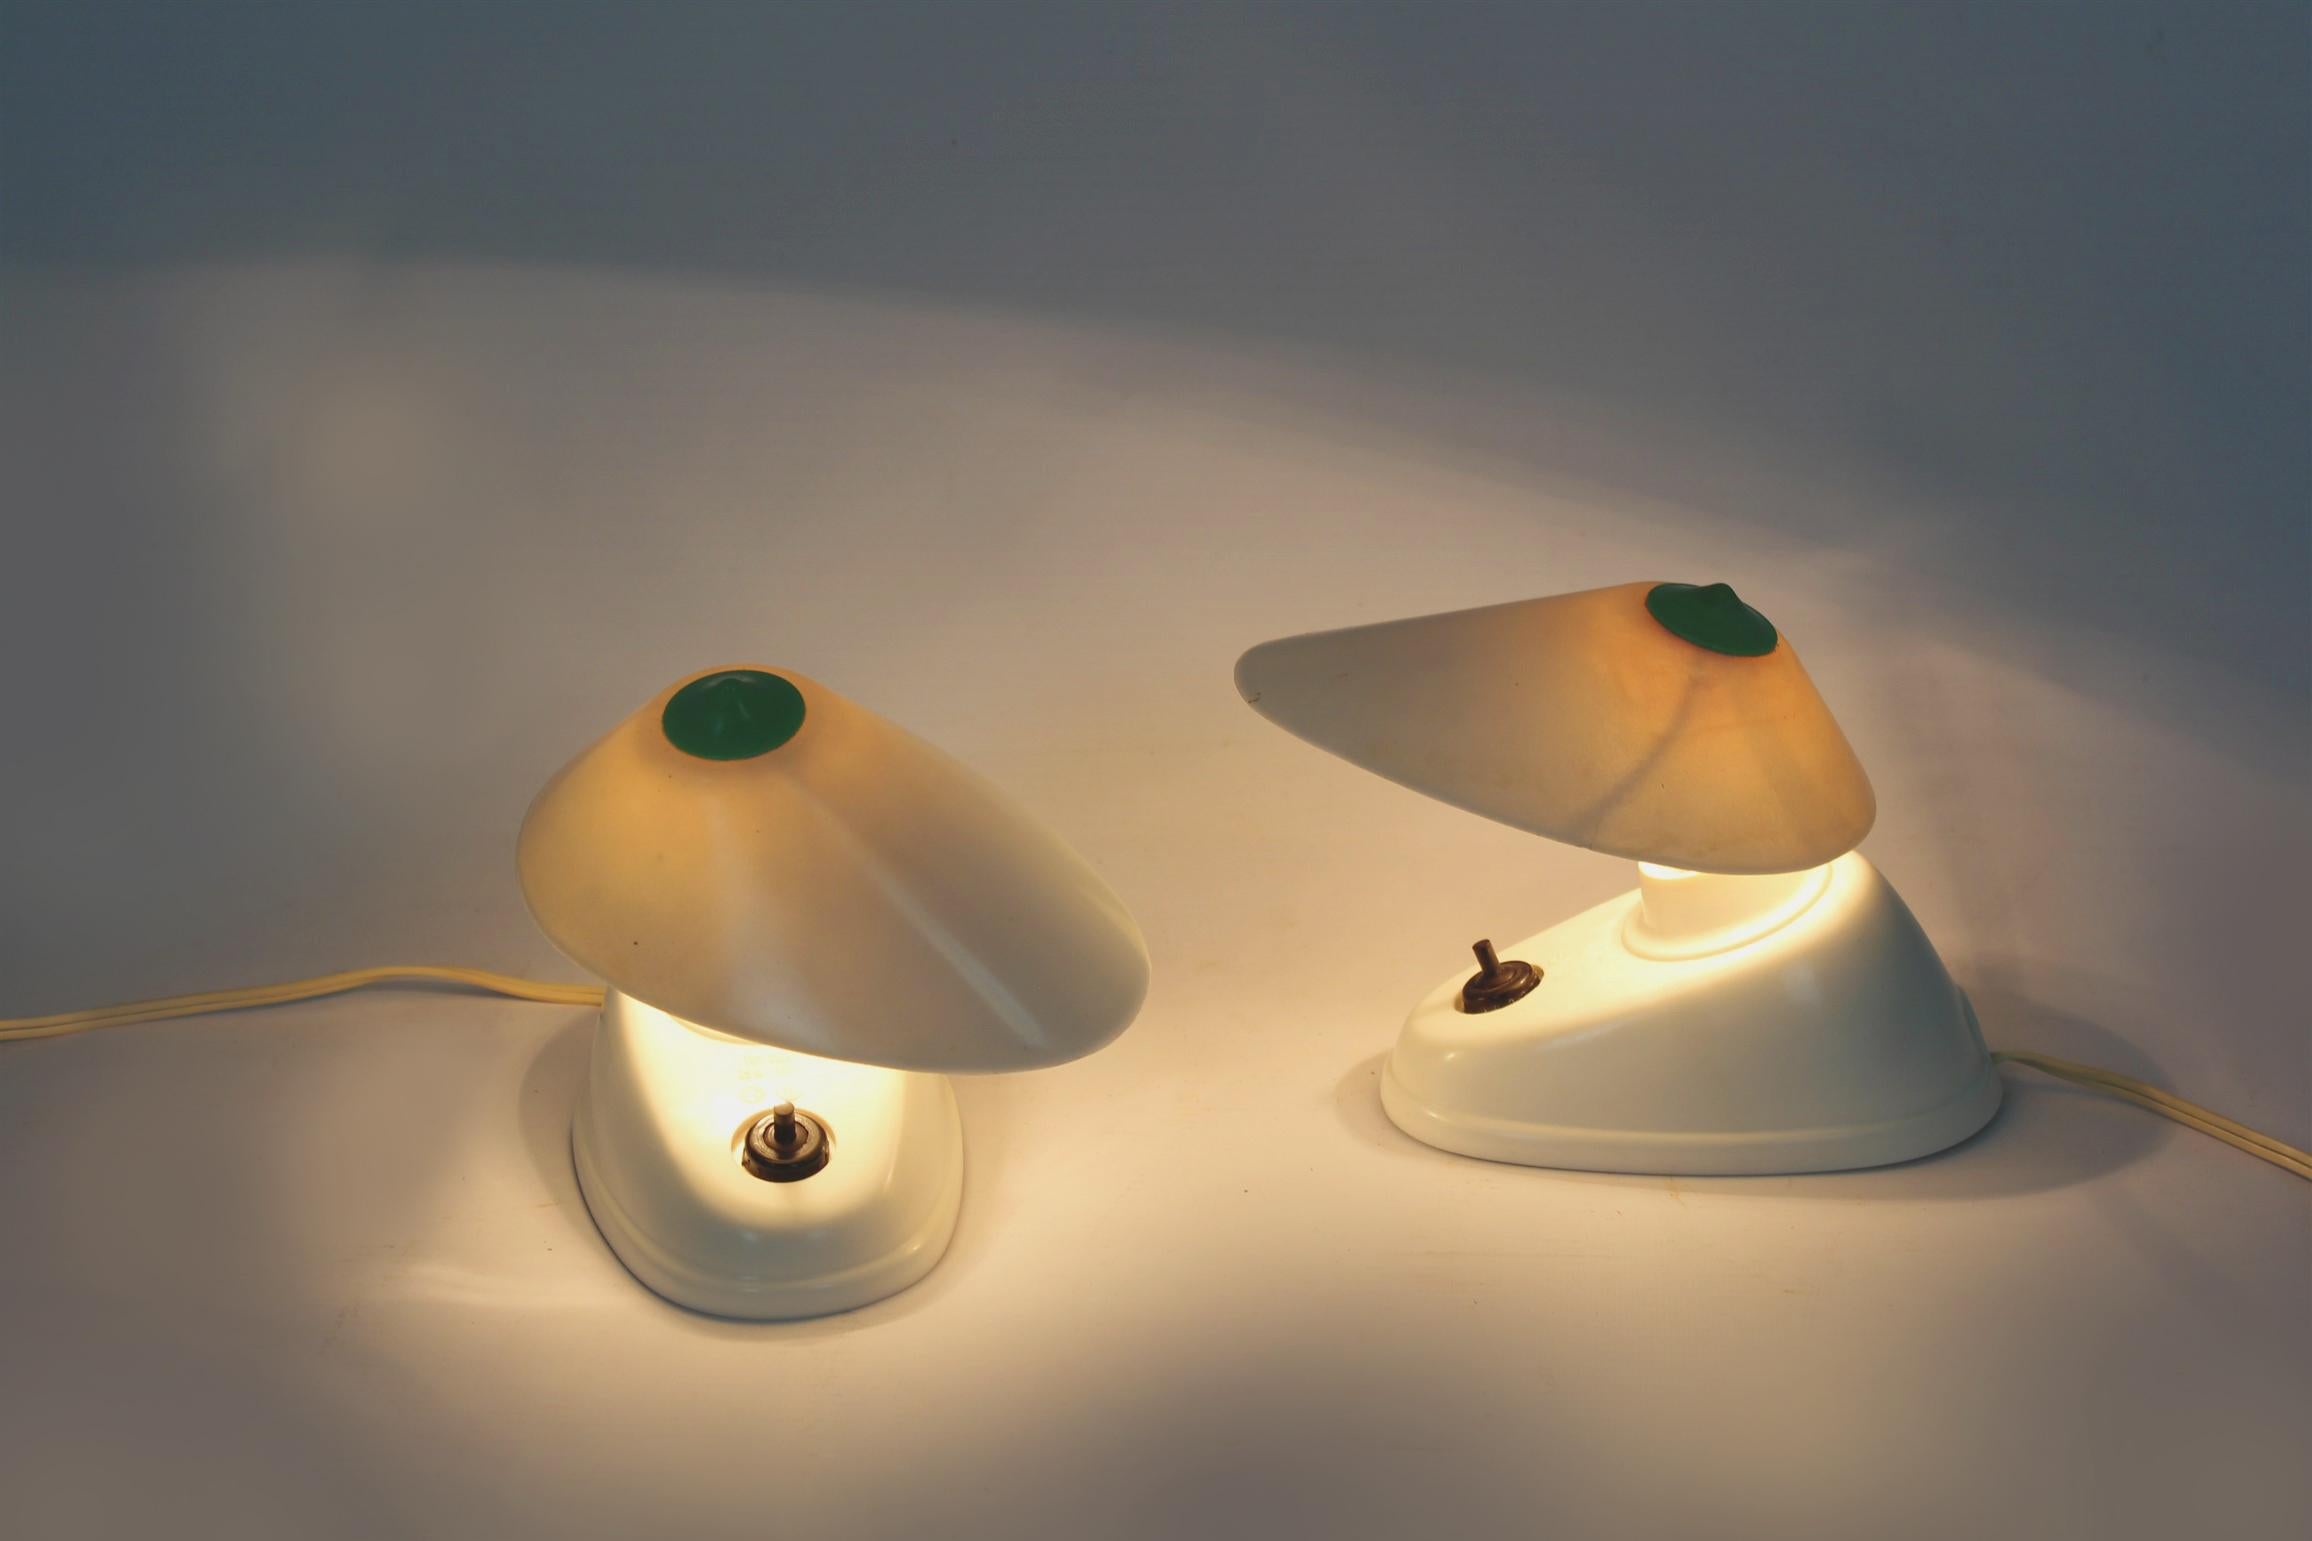 
Ein Satz von zwei Bakelit-Tischlampen im Bauhaus-Stil, hergestellt in der Tschechoslowakei in den 1940er Jahren. Asymmetrische Form, verstellbarer Winkel des Lampenschirms. Die Lampen haben eine sichtbare Modellbezeichnung (11641) und das Logo des